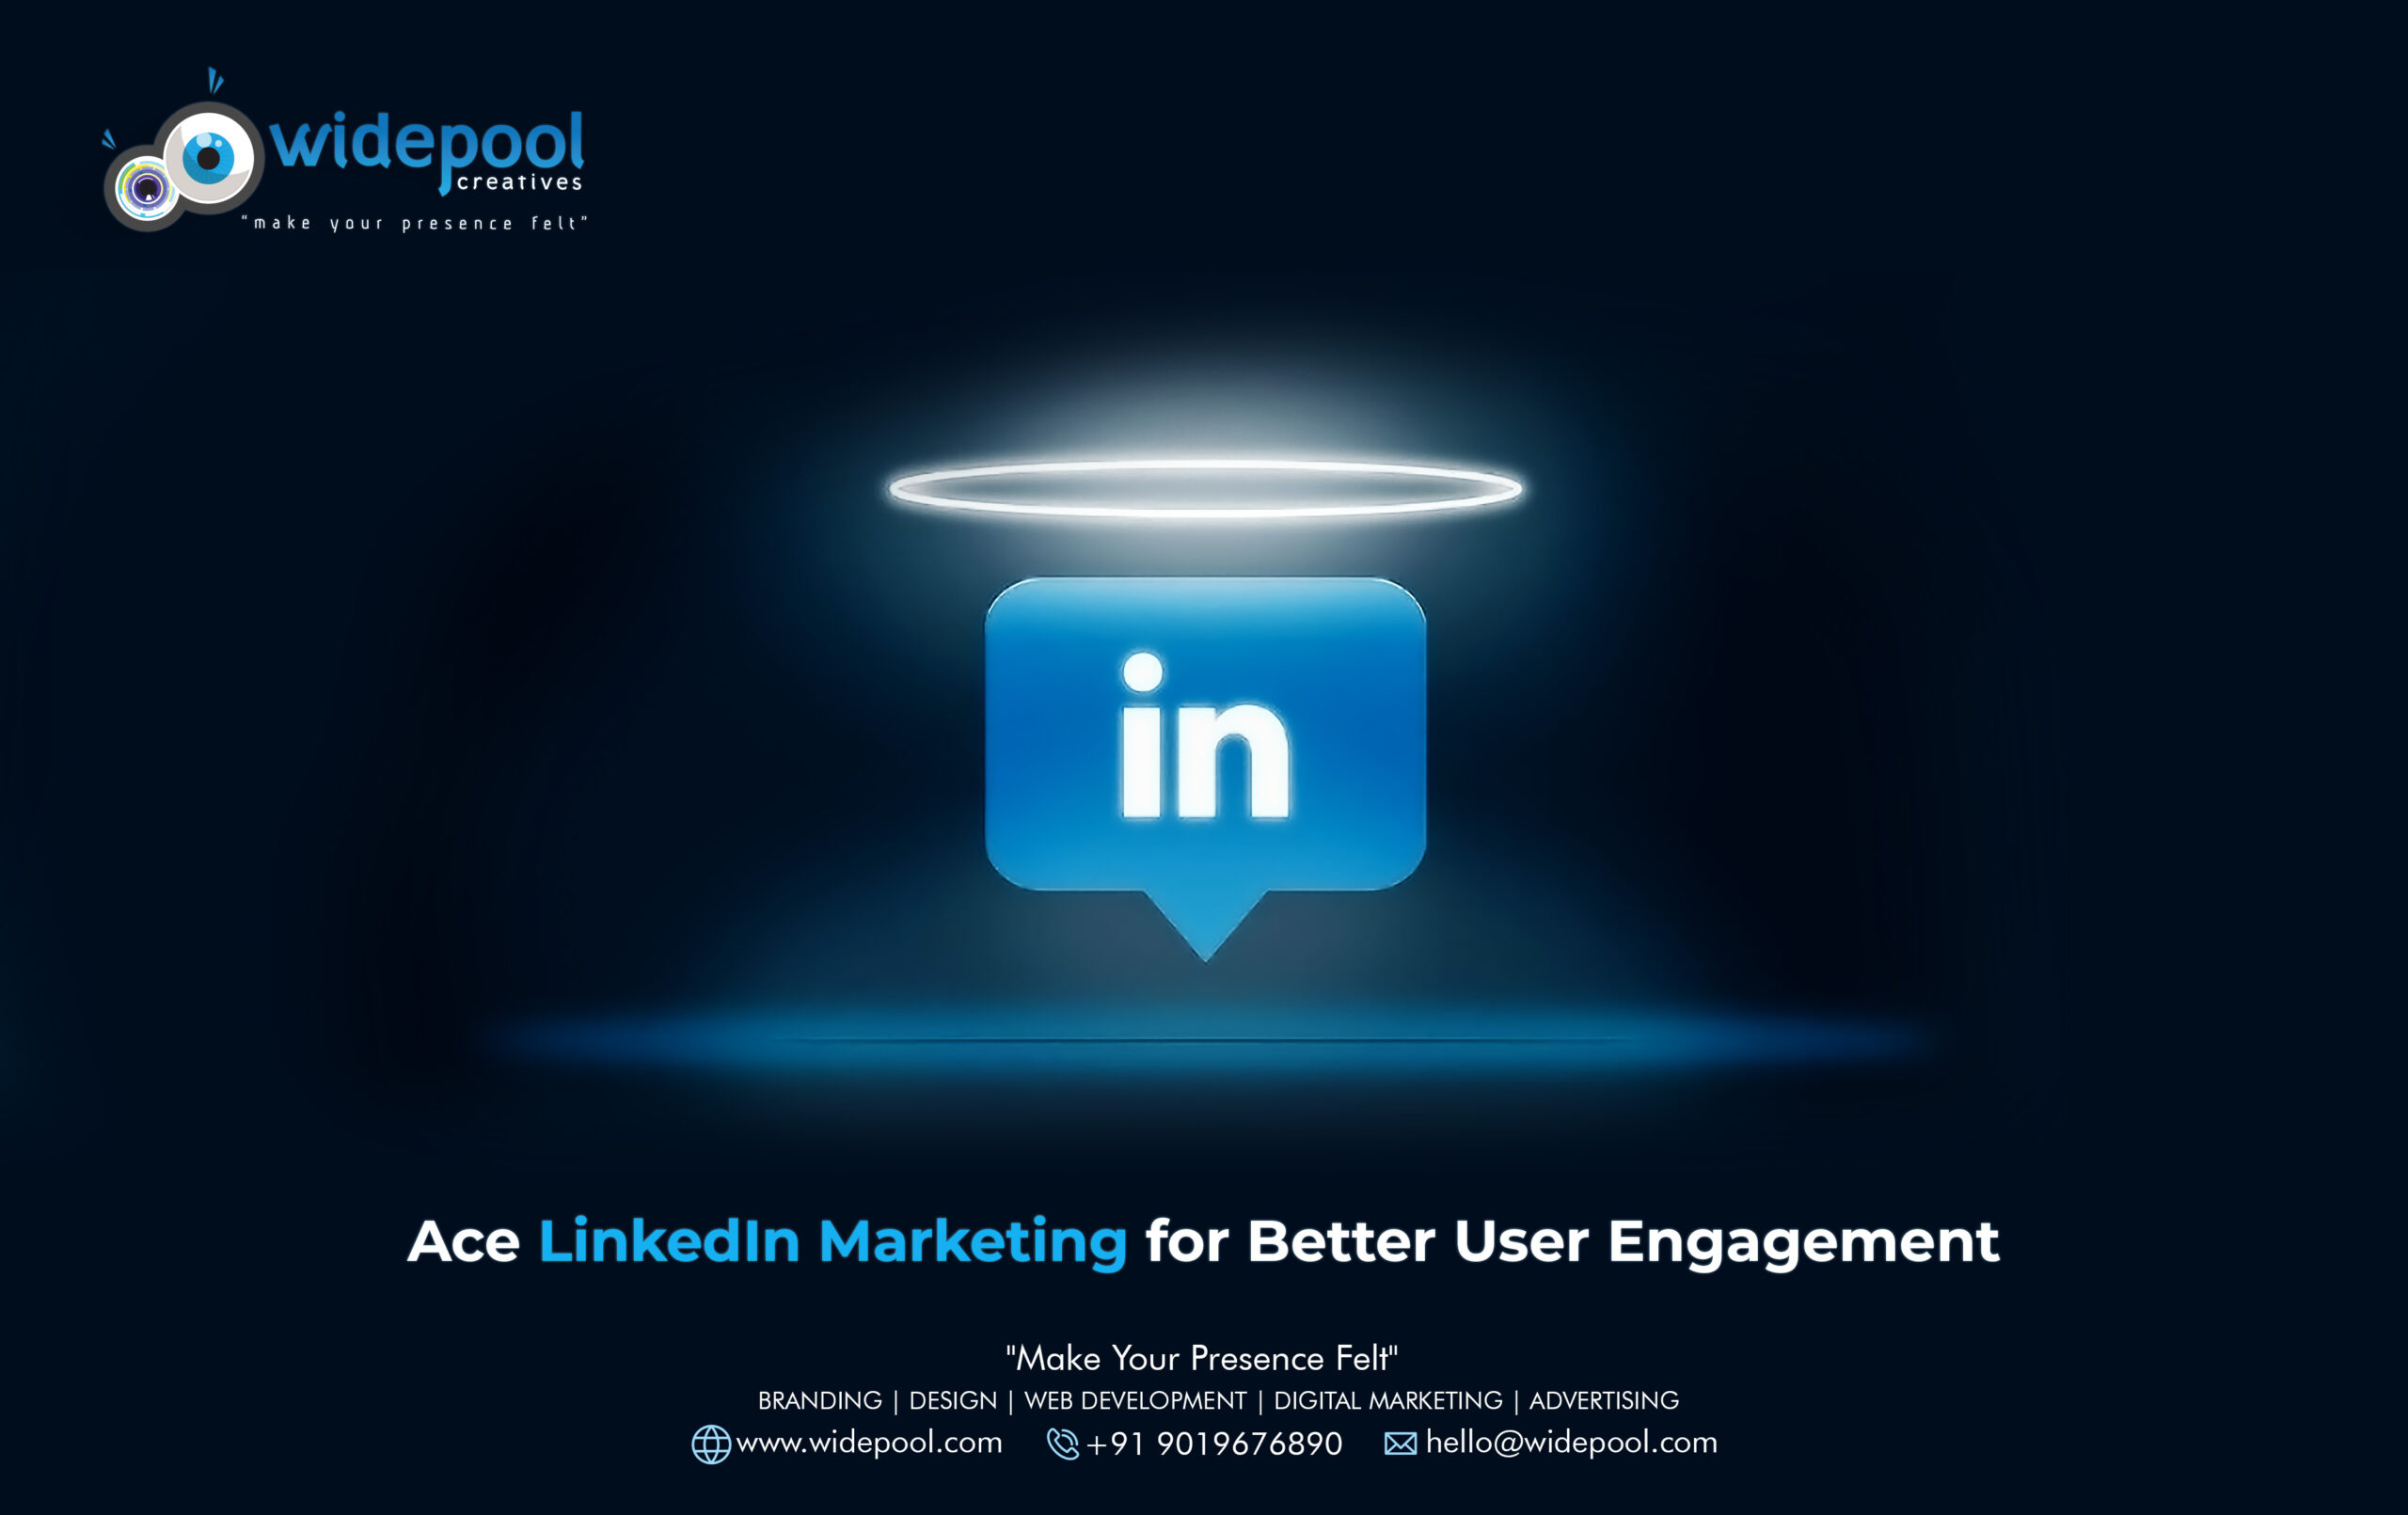 Ace LinkedIn Marketing for Better User Engagement